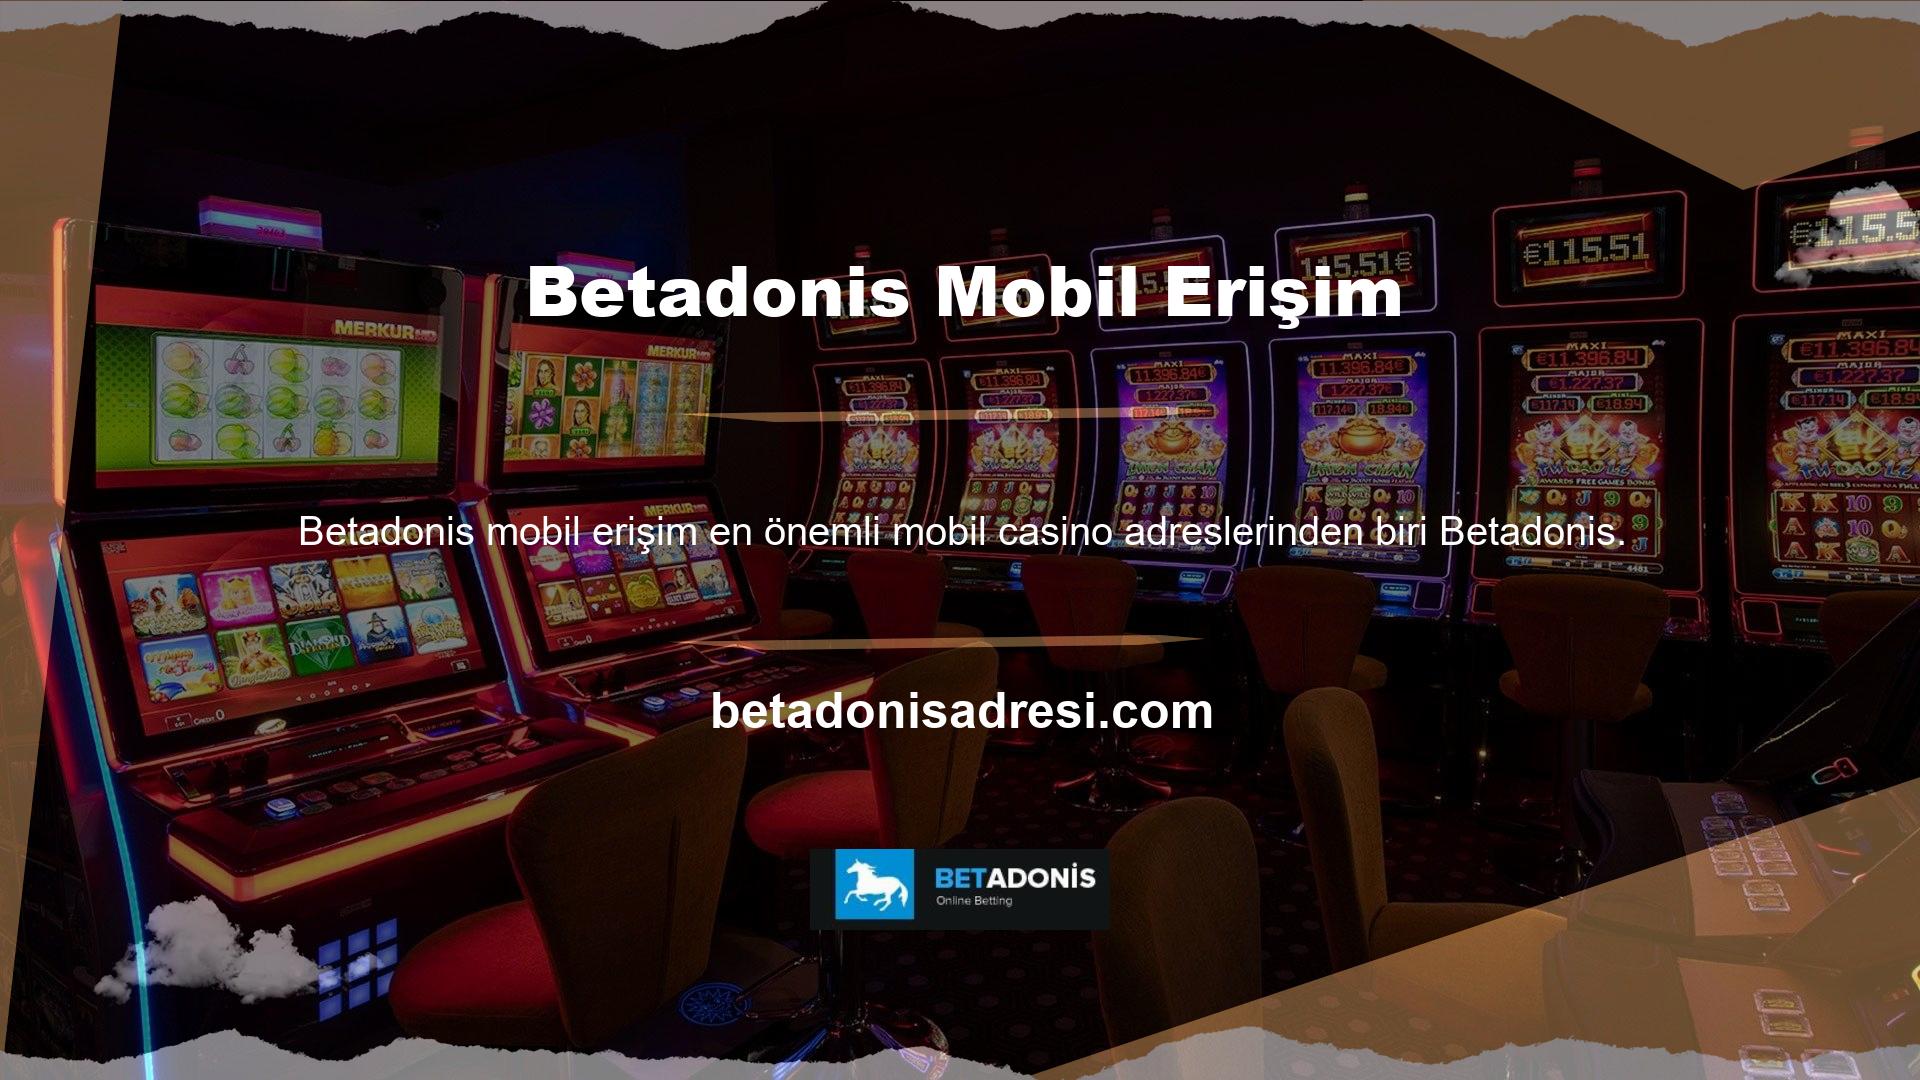 Betadonis mobil sitesine giriş yaptıktan sonra cep telefonunuzdan bahis oynayabilirsiniz